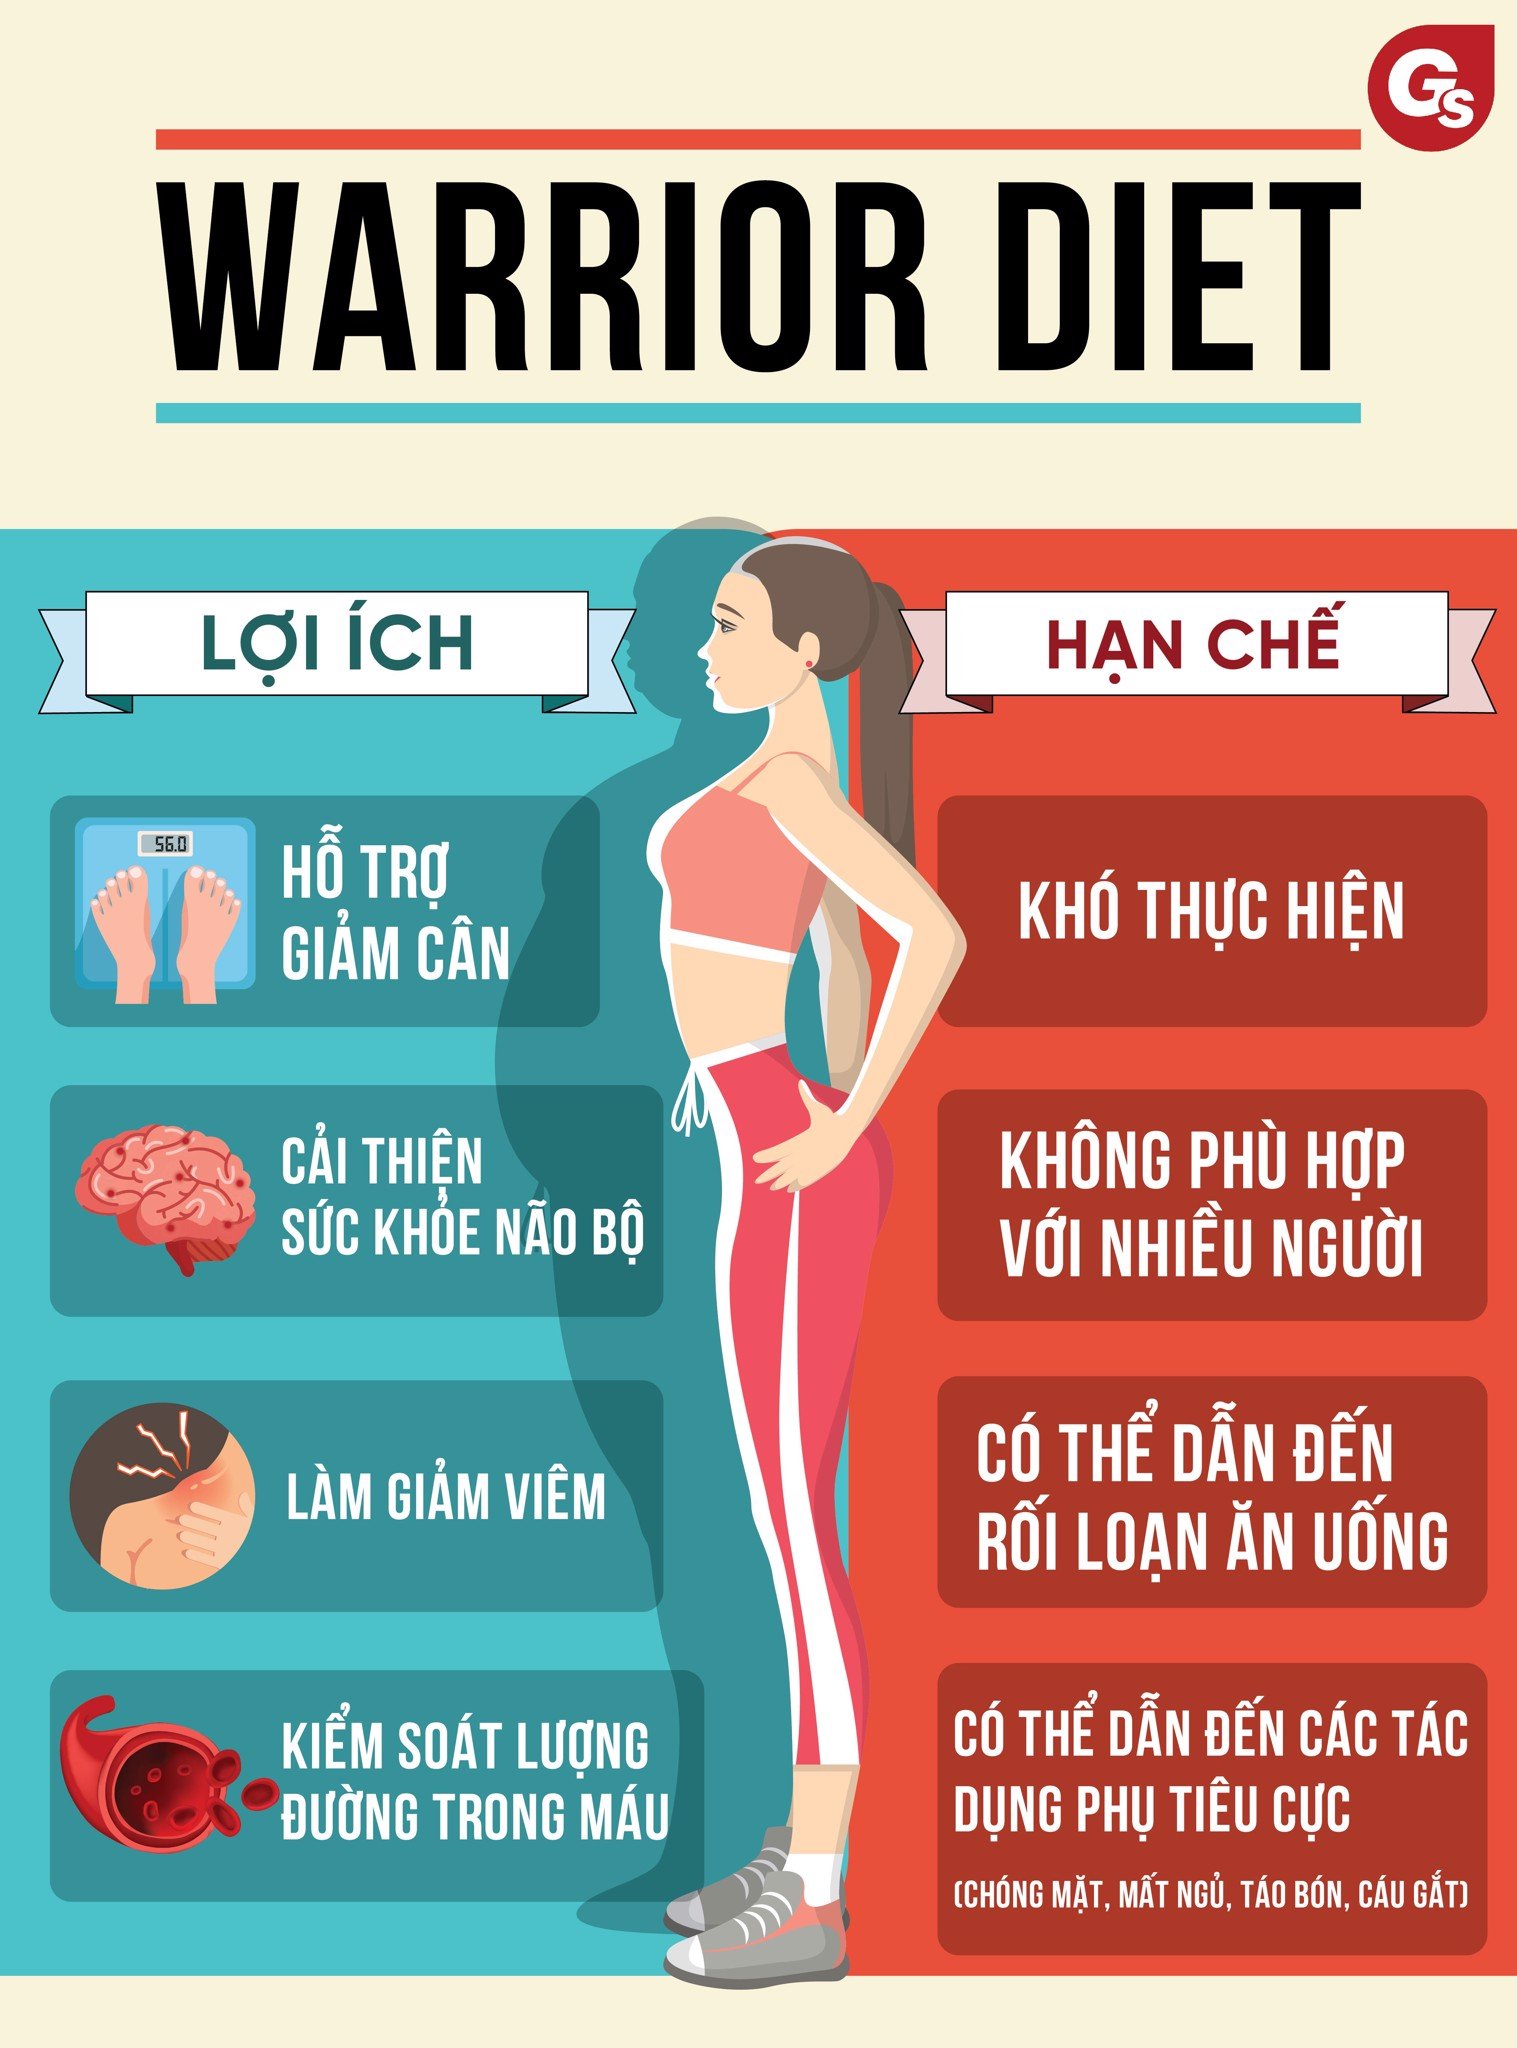 loi-ich-han-che-warrior-diet-gymstore